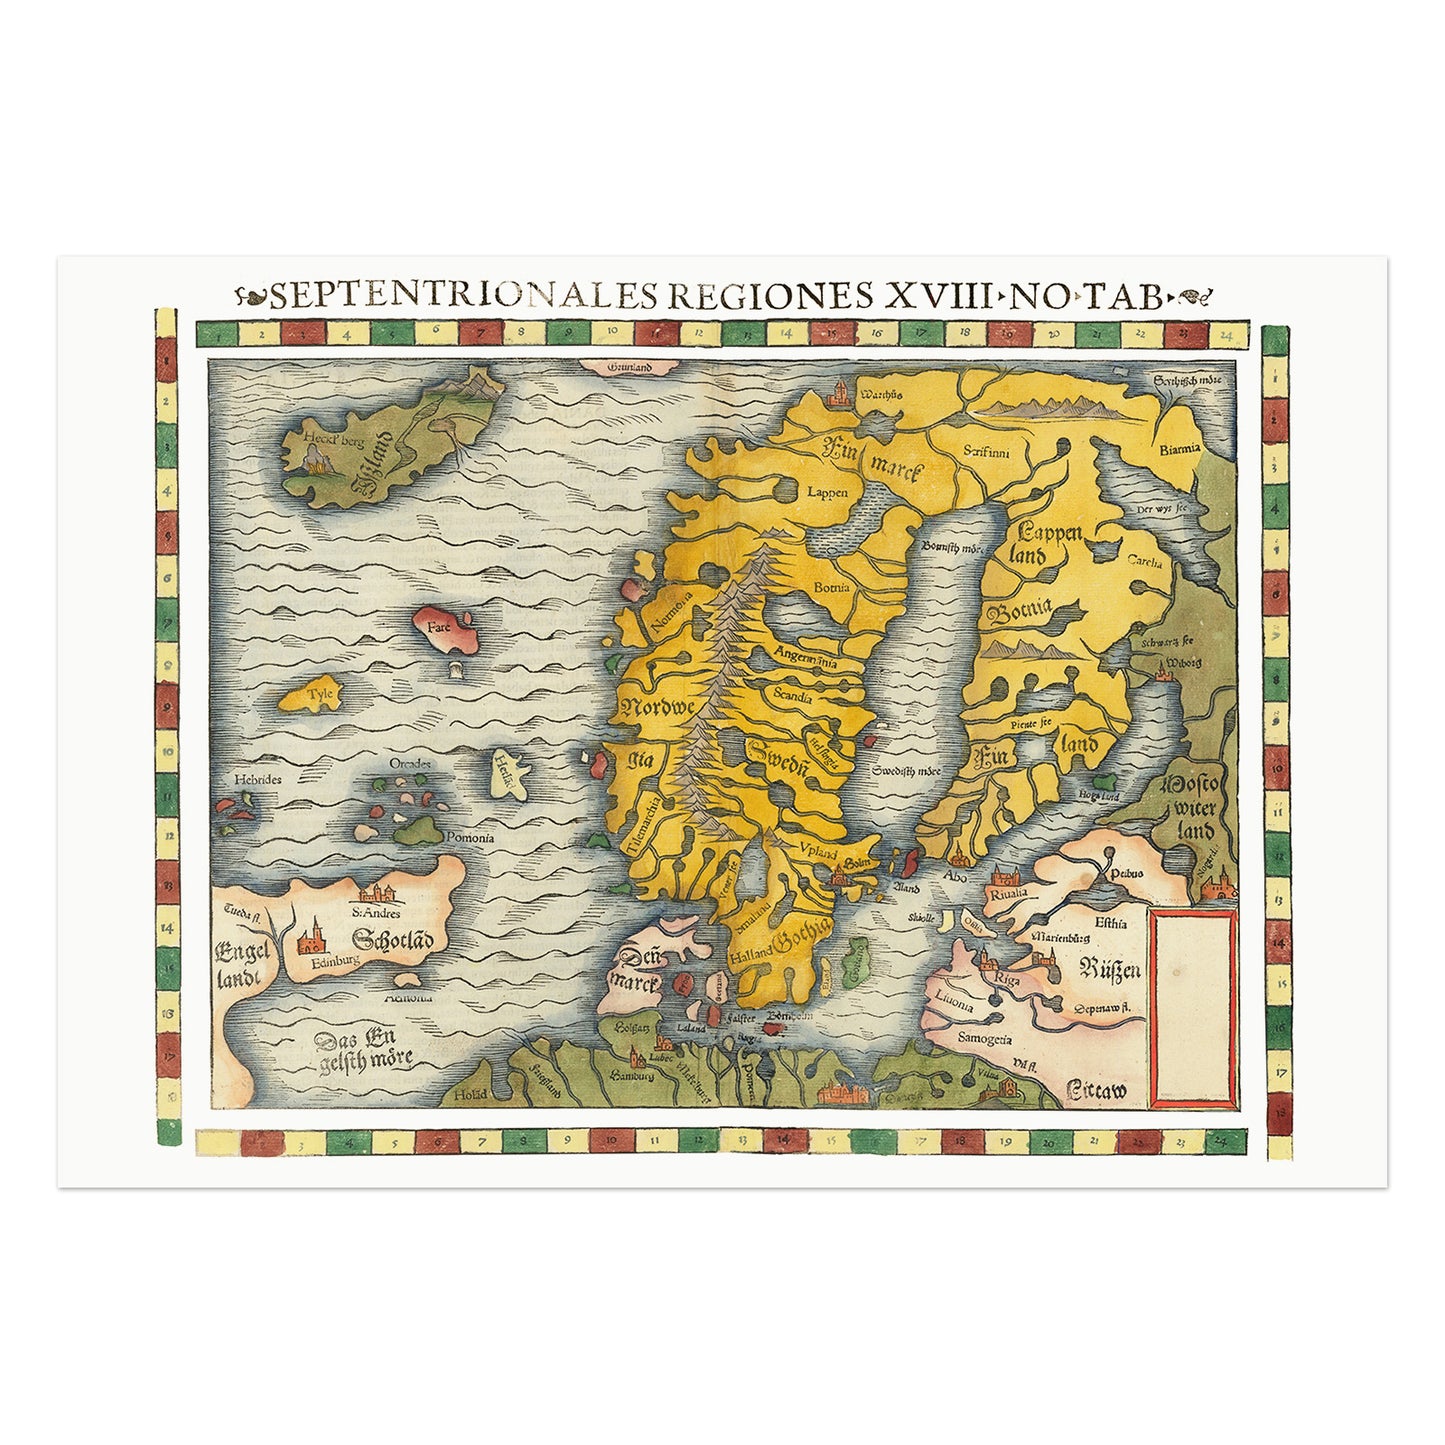 Septentrionales Regiones, kort over Skandinavien